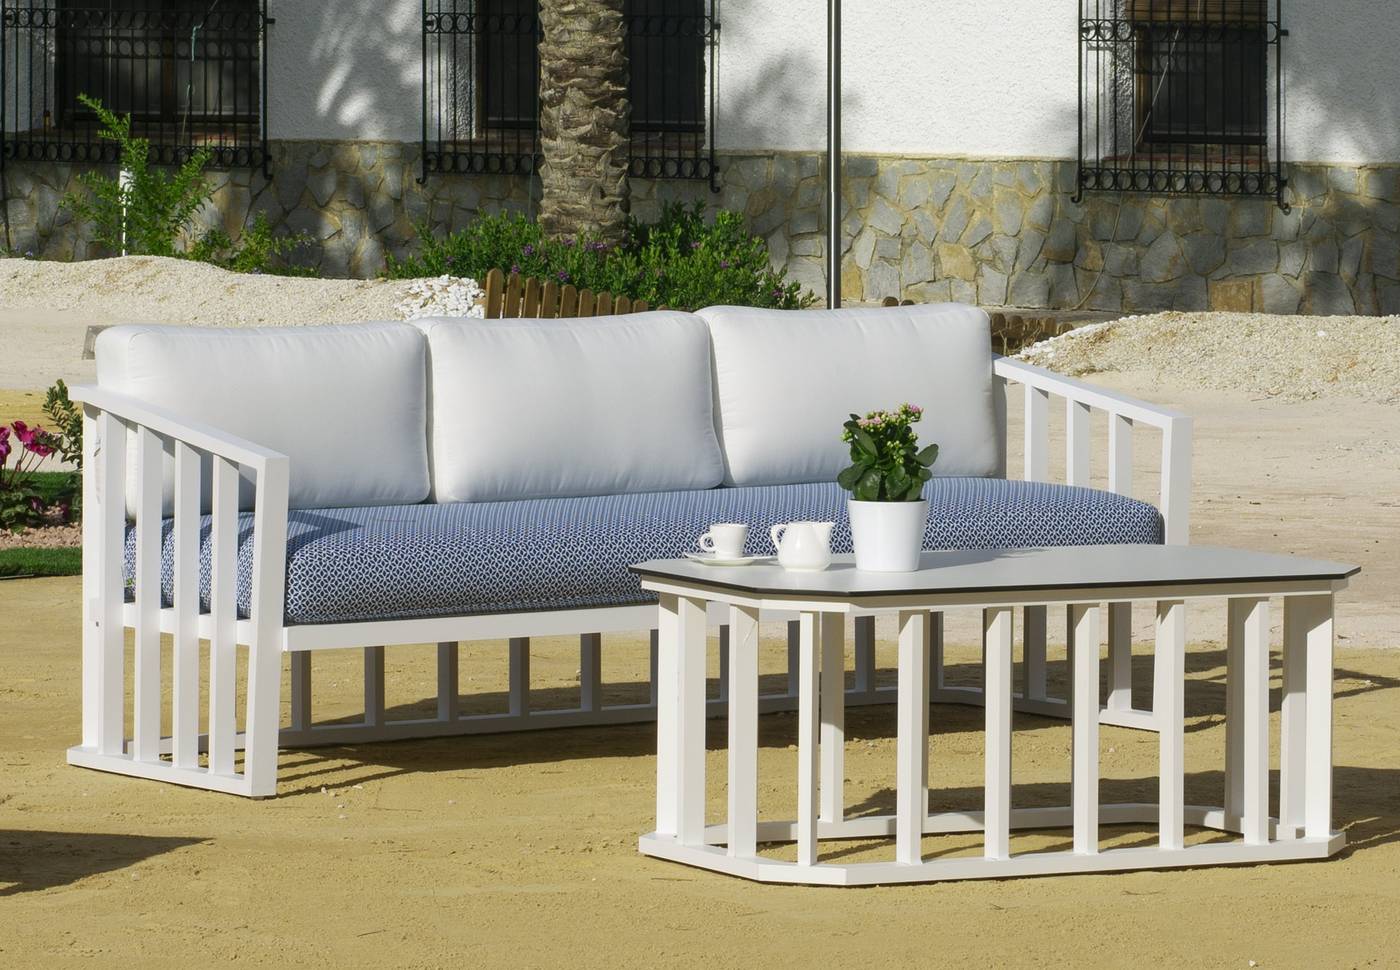 Sofá confort3 plazas con cojines. Estructura de aluminio  de color blanco, antracita, champagne, plata o marrón.